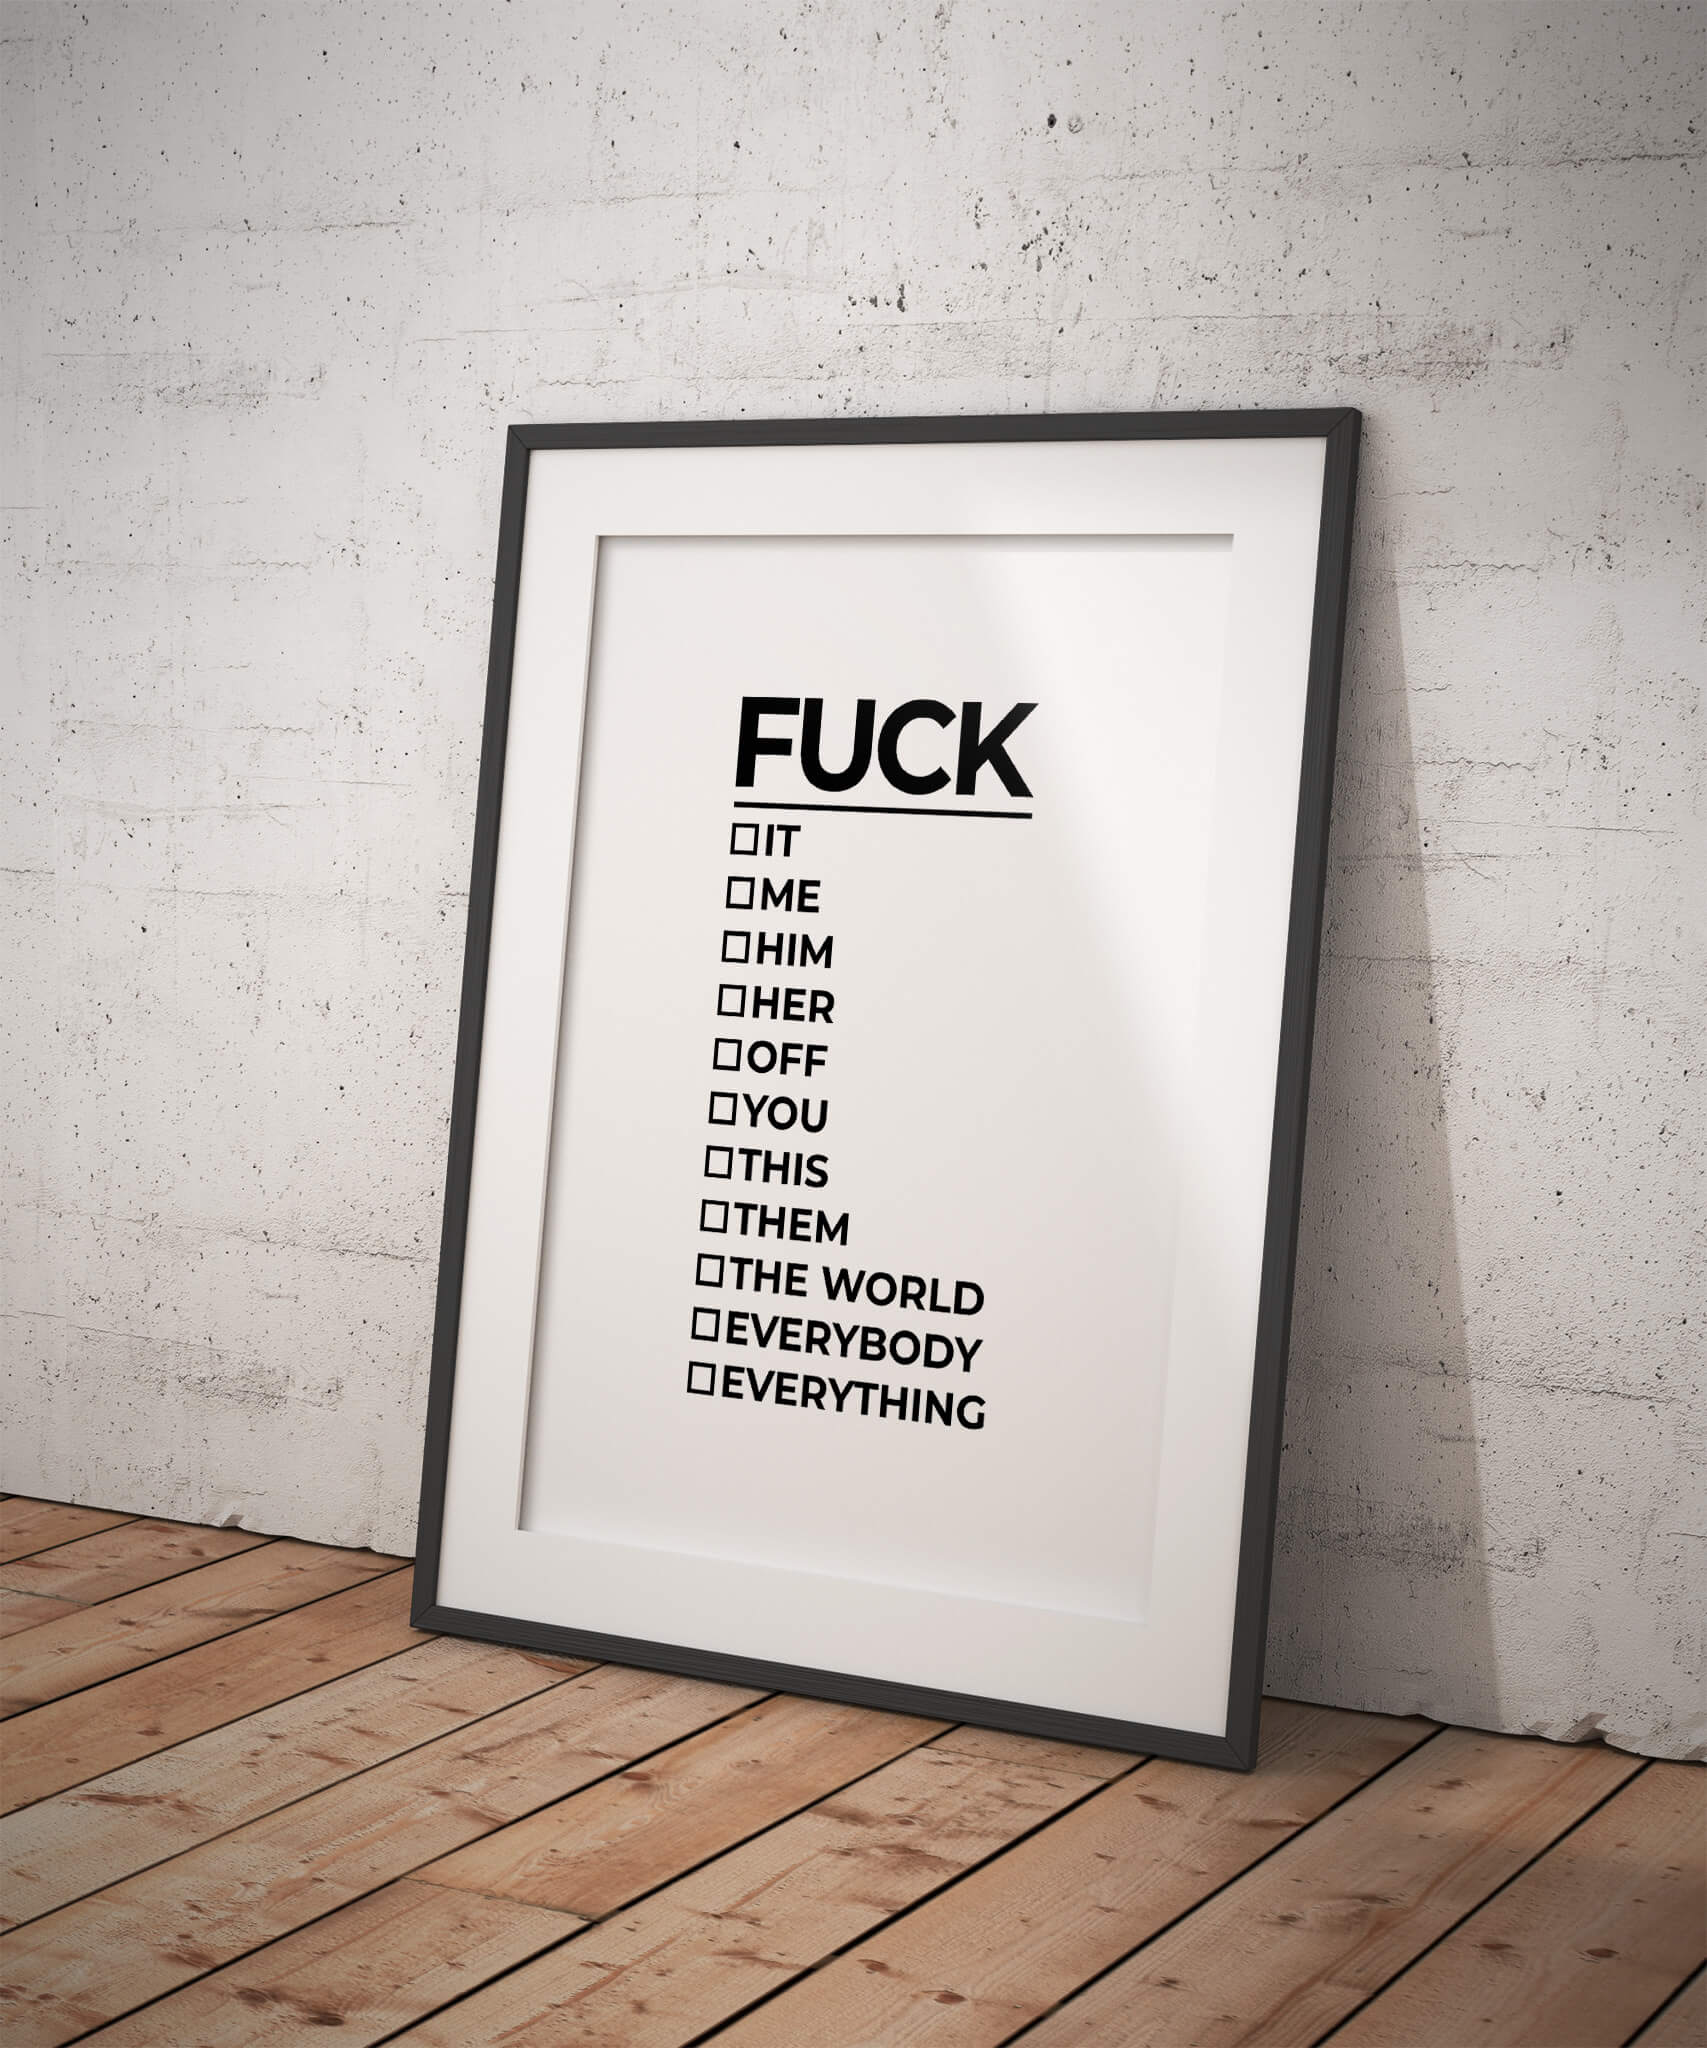 Fuck Checklist Poster